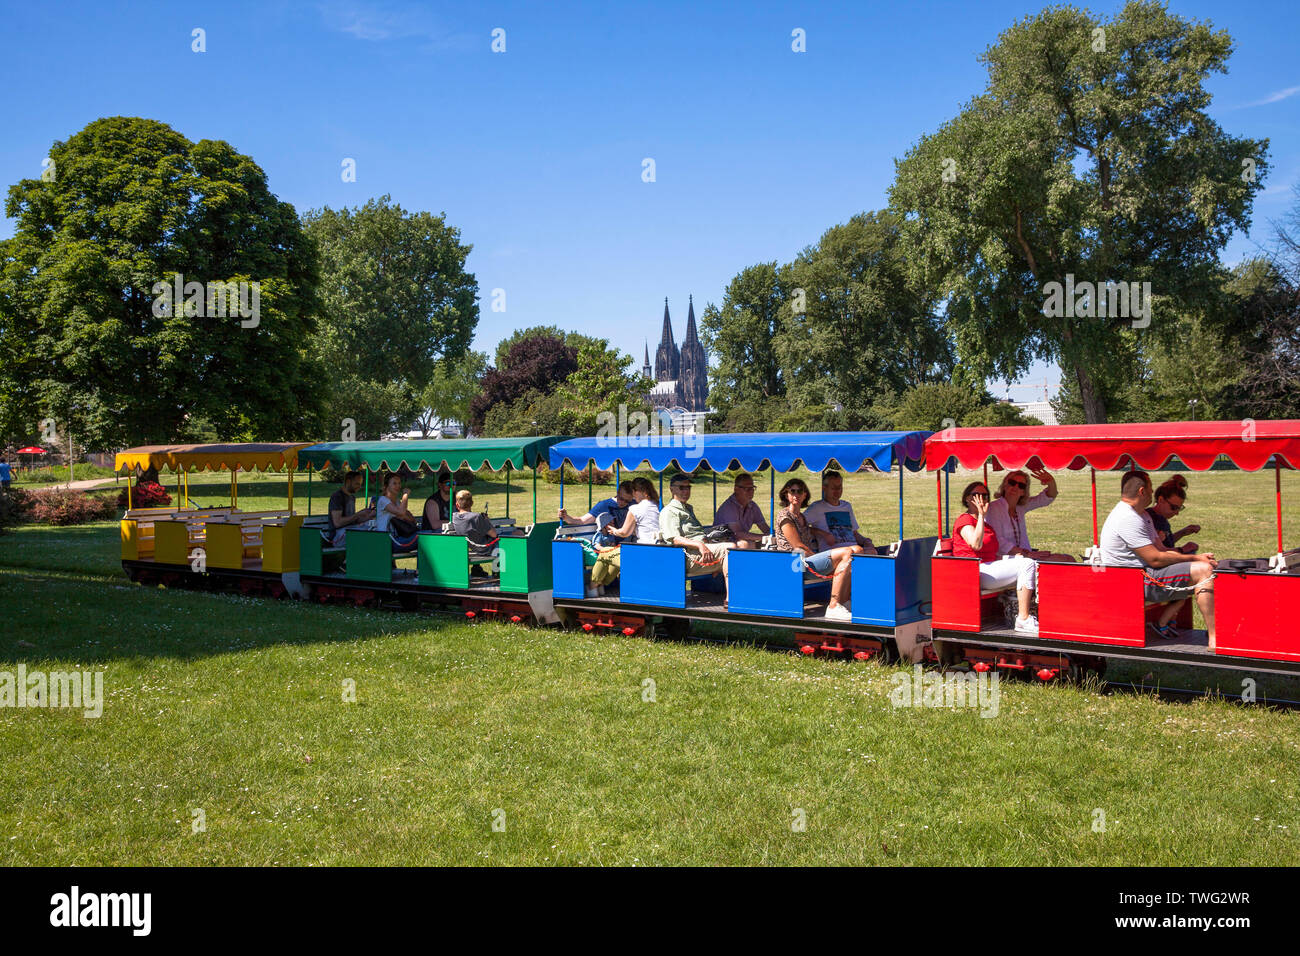 Trenes en miniatura en el parque del Rin en el distrito Deutz, vistas a la catedral de Colonia, Alemania. Im en el Rheinpark Kleinbahn Deutz, Blick zum Dom, K Foto de stock